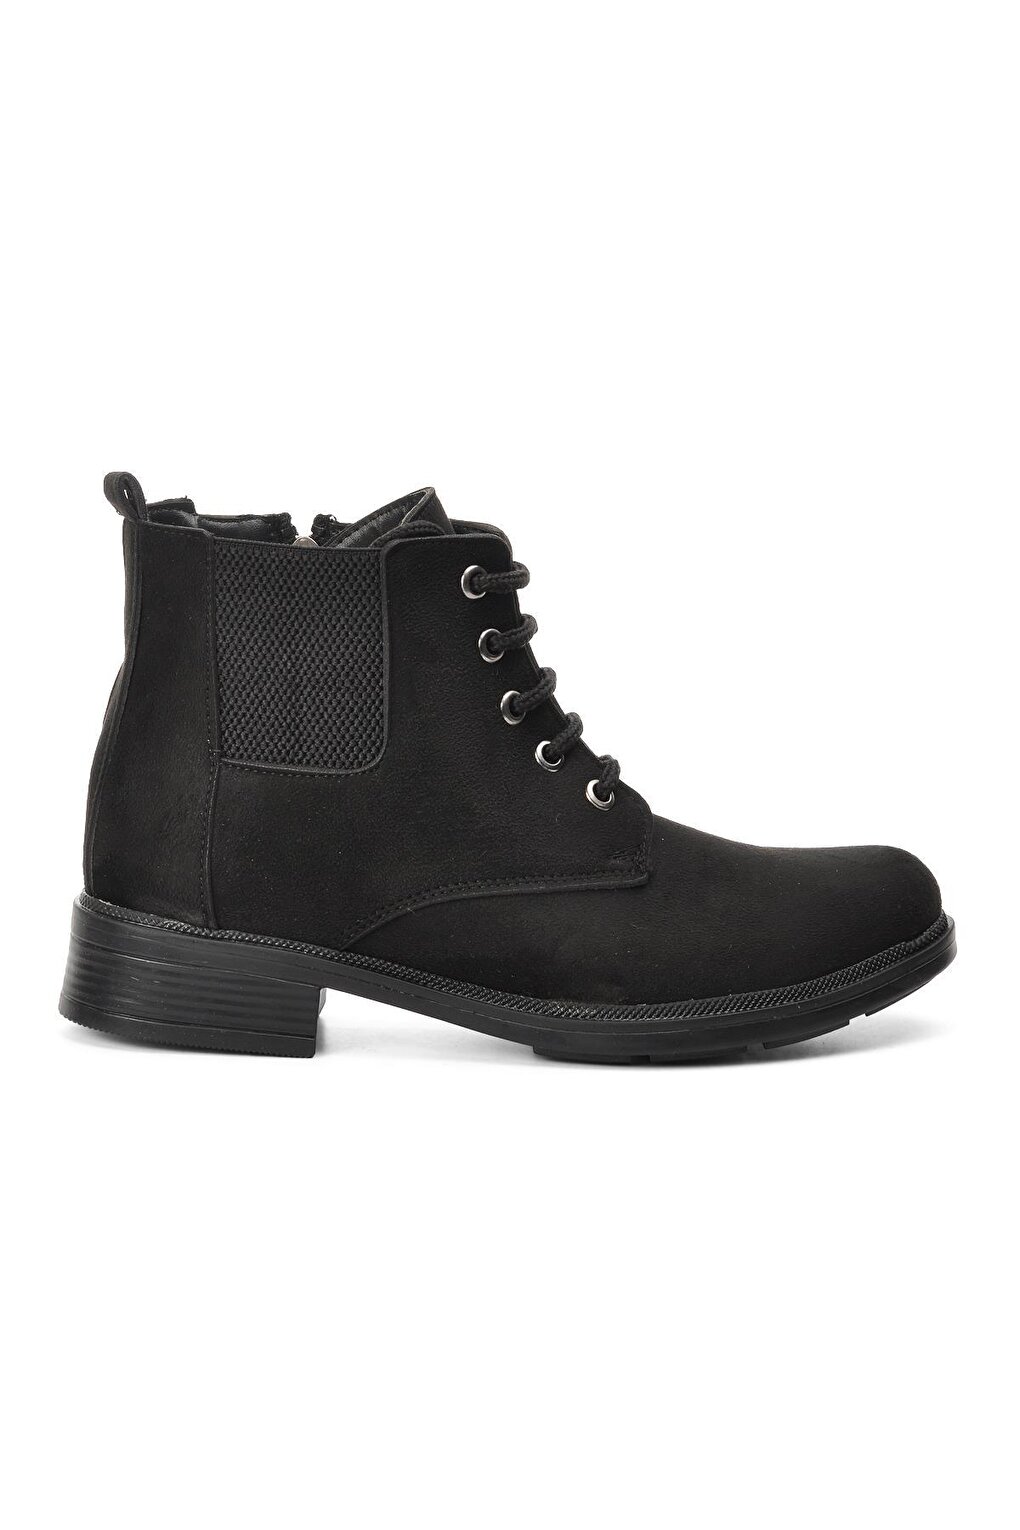 220203 Черные замшевые женские ботинки Ayakmod цена и фото